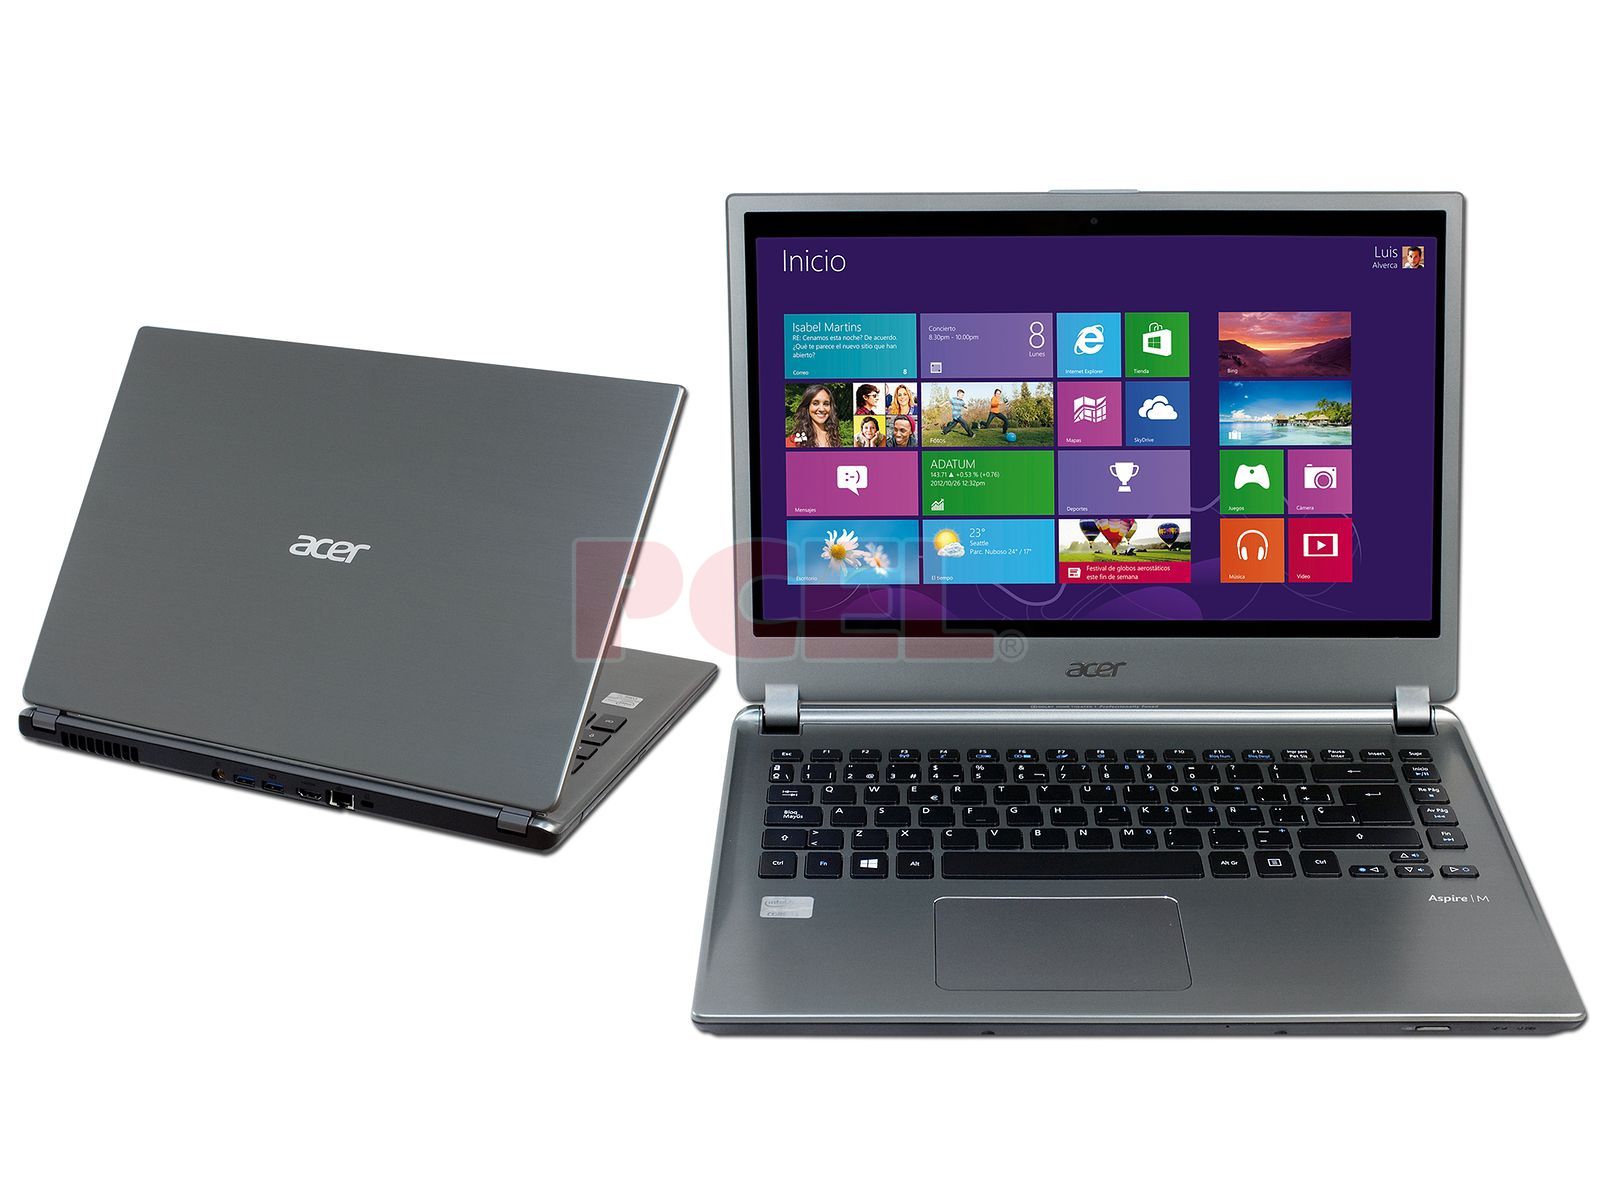 Ultrabook Acer Aspire M5-481T-6693: Procesador Intel Core i5-3337U